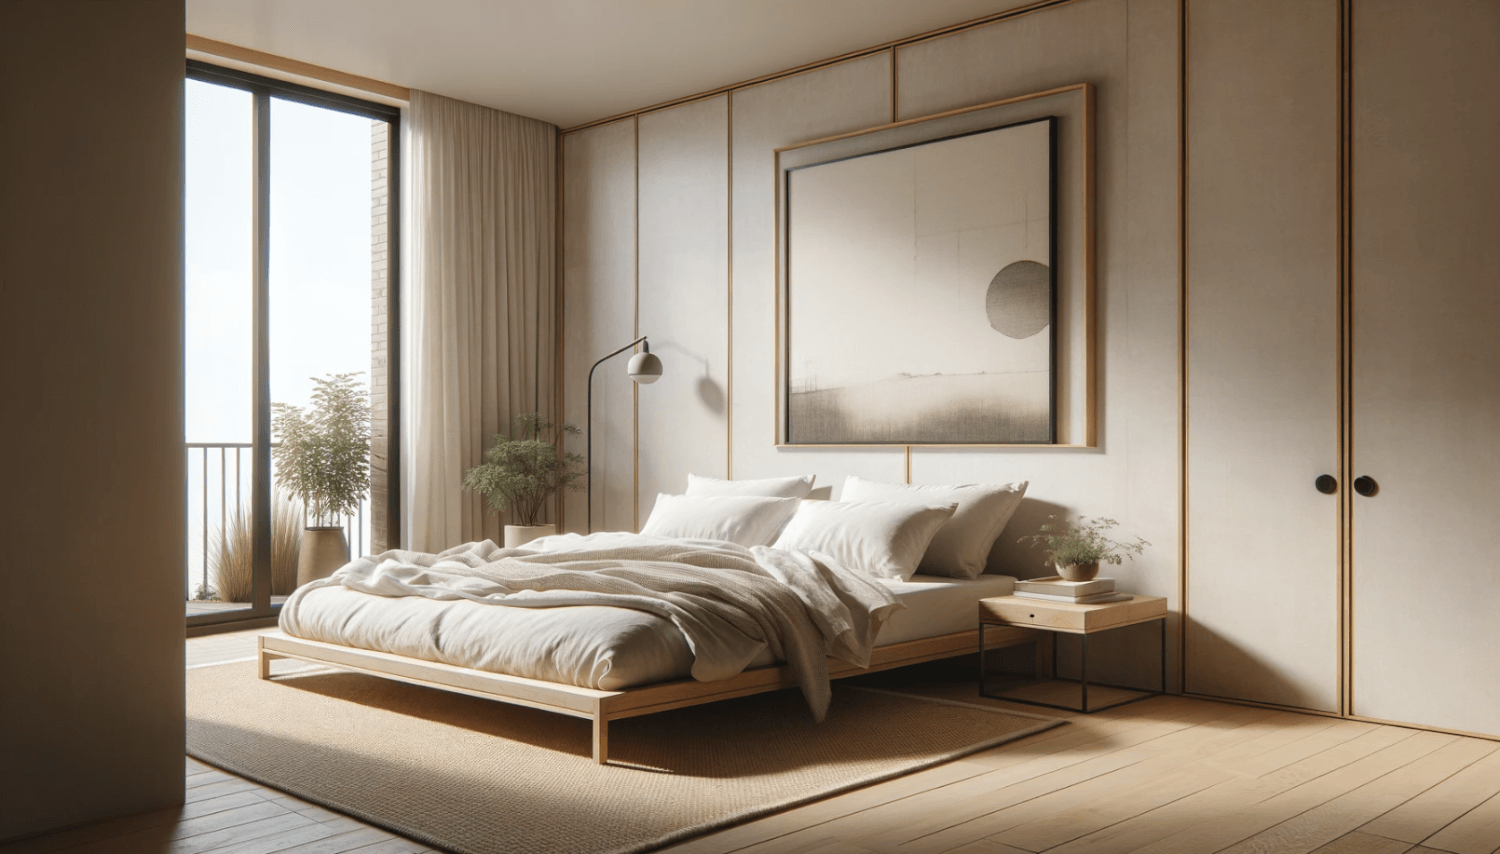 japandi-bedroom.png